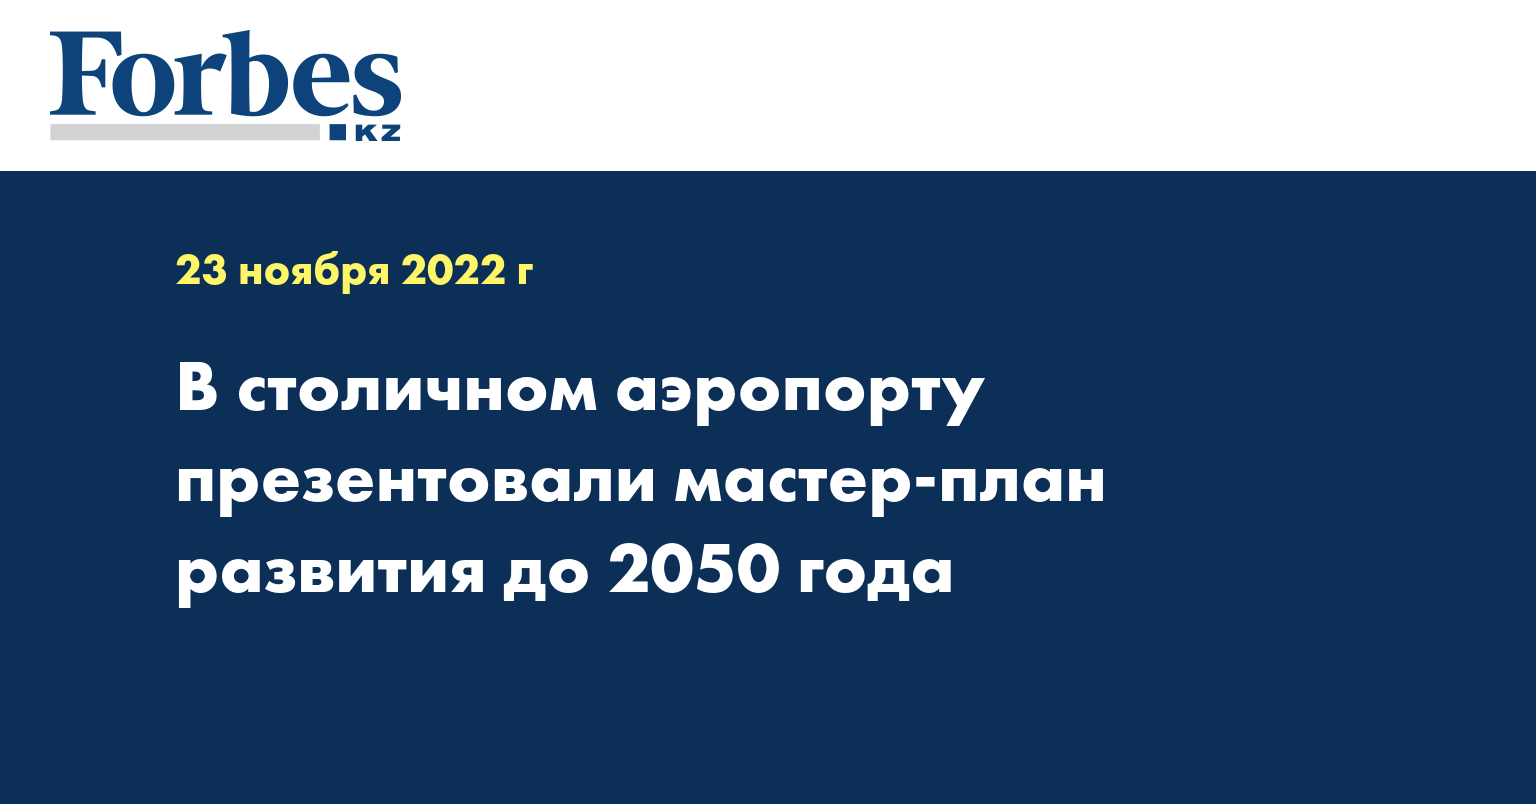 В столичном аэропорту презентовали мастер-план развития до 2050 года